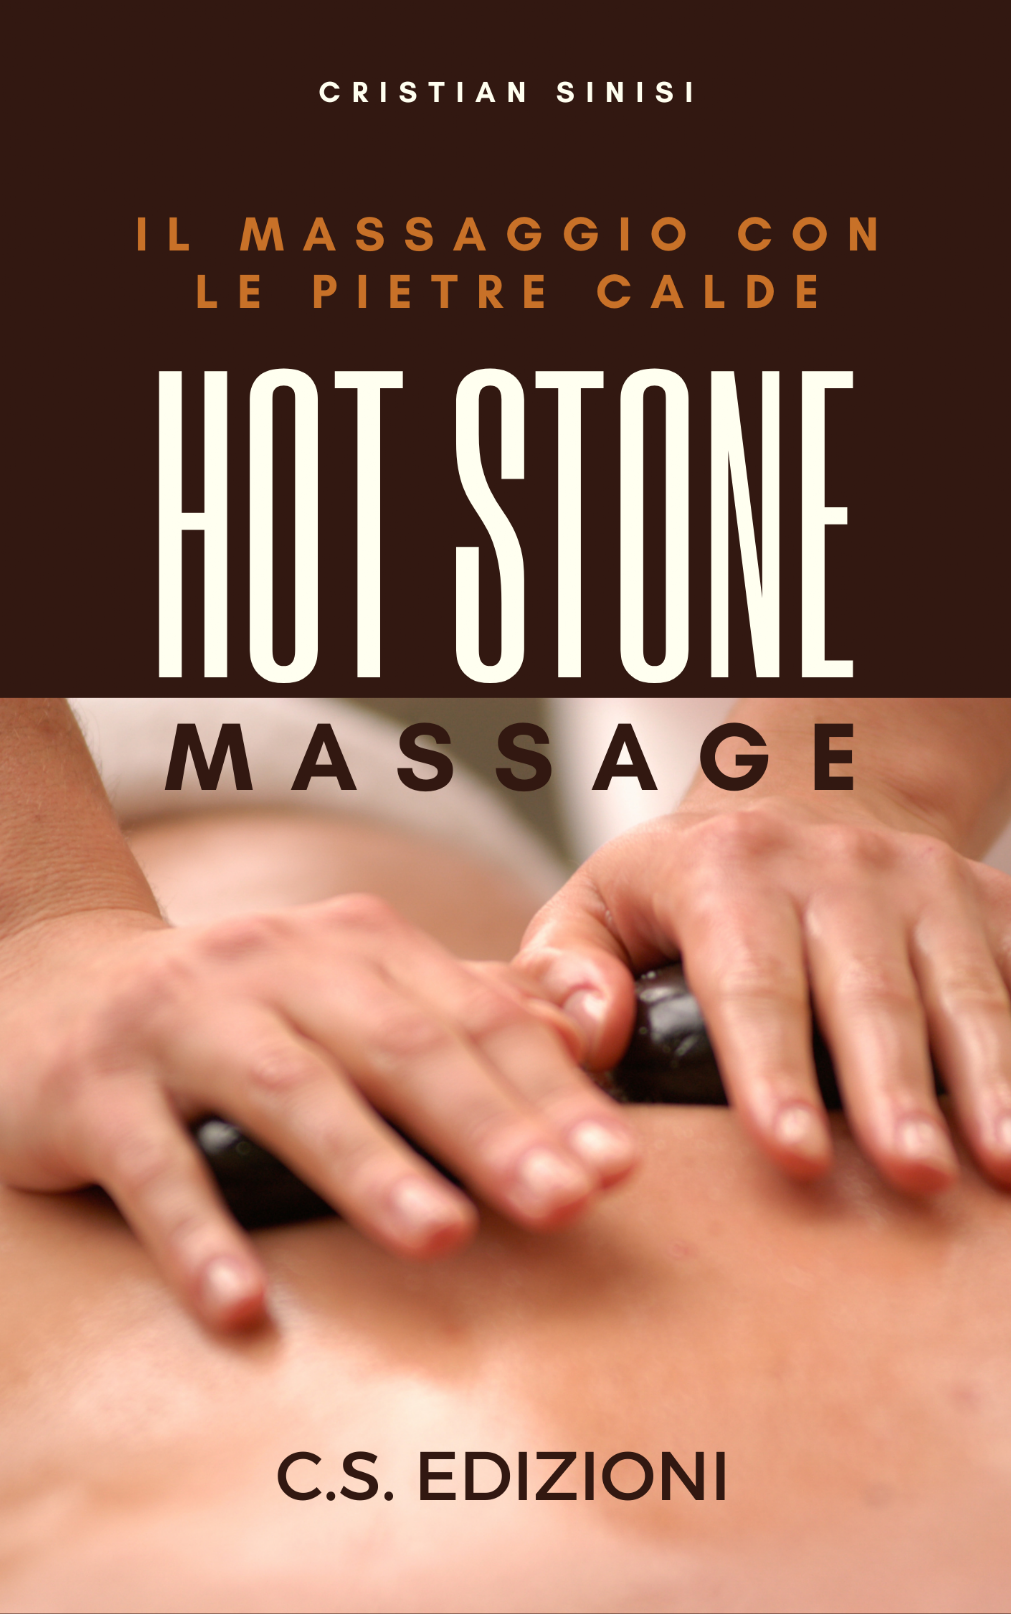 corso di hot stone massage con Cristian Sinisi 